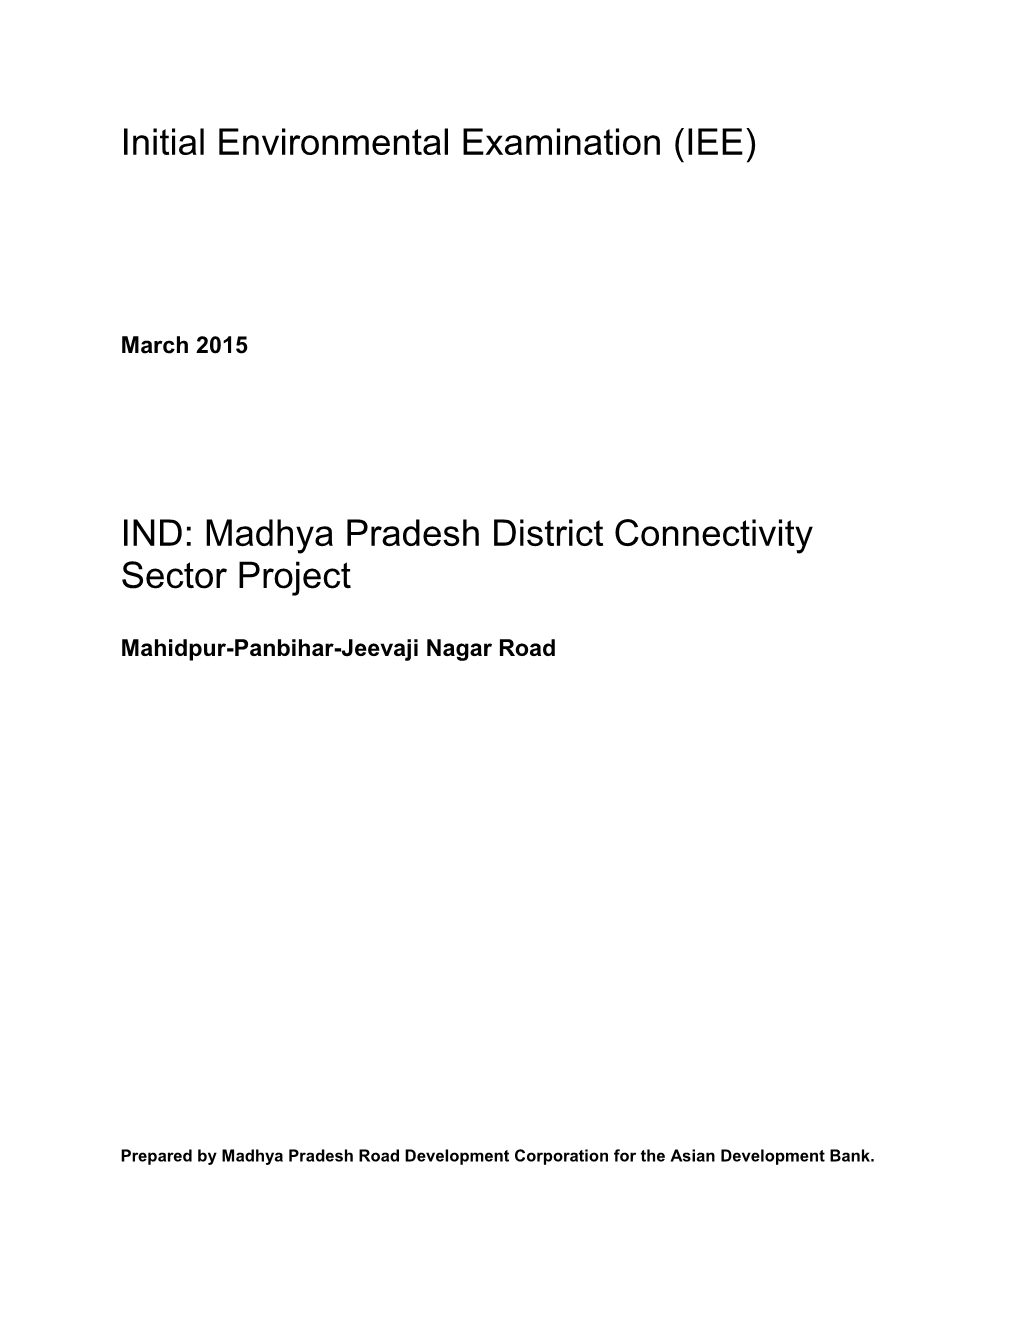 Initial Environmental Examination Report Mahidpur- Panbihar- Jeevajinagar Road